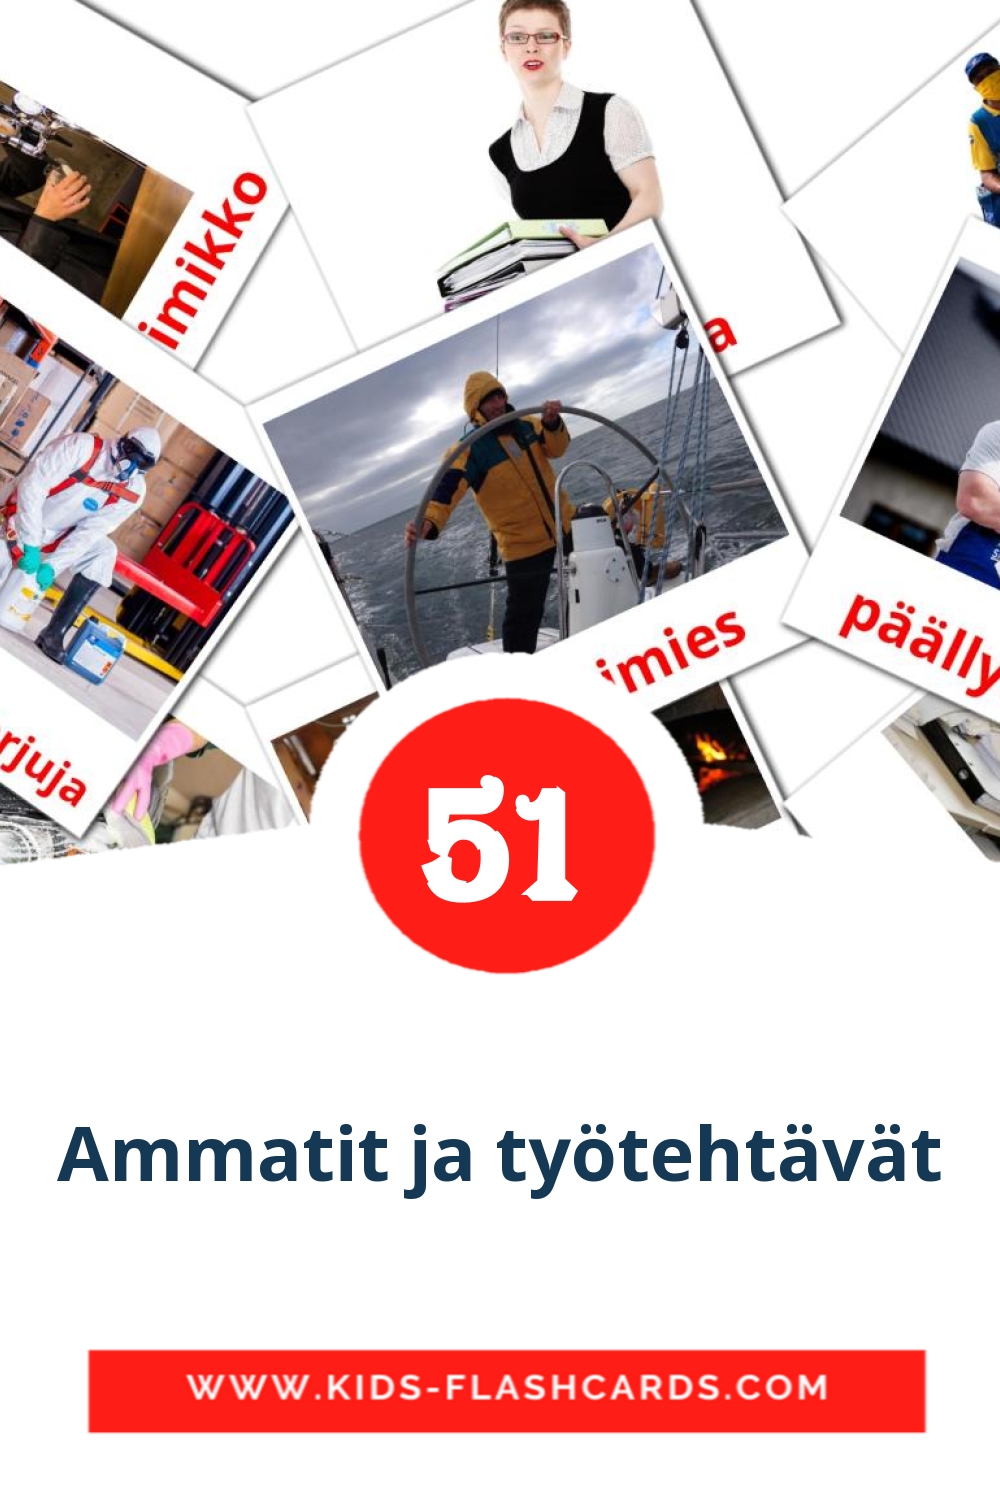 51 carte illustrate di Ammatit ja työtehtävät per la scuola materna in finlandese